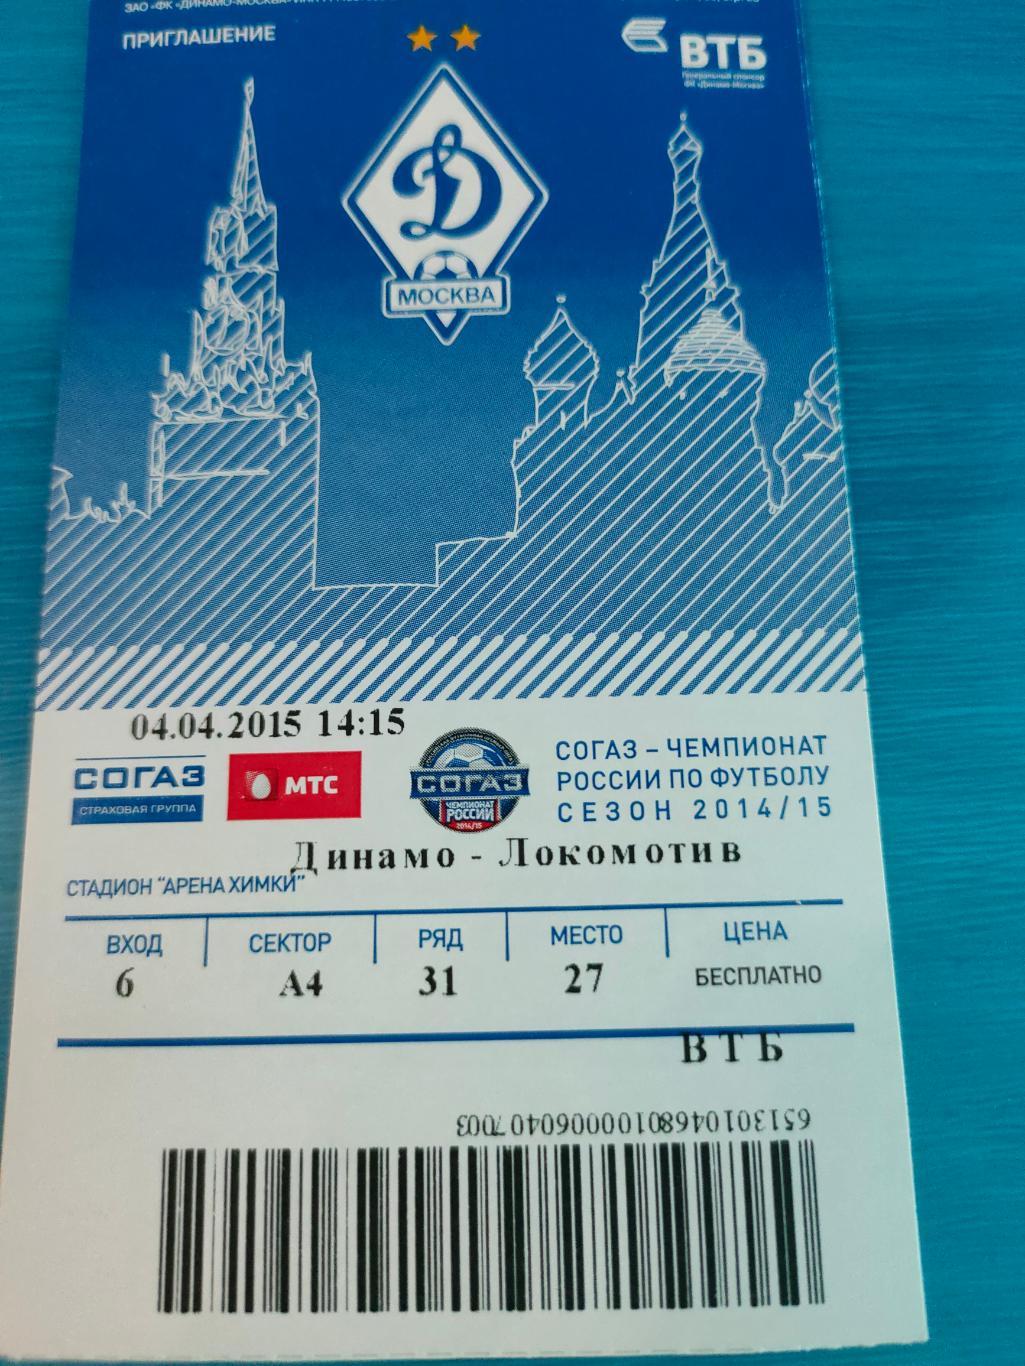 04.04.2015 - Динамо (Москва) vs Локомотив (Москва)